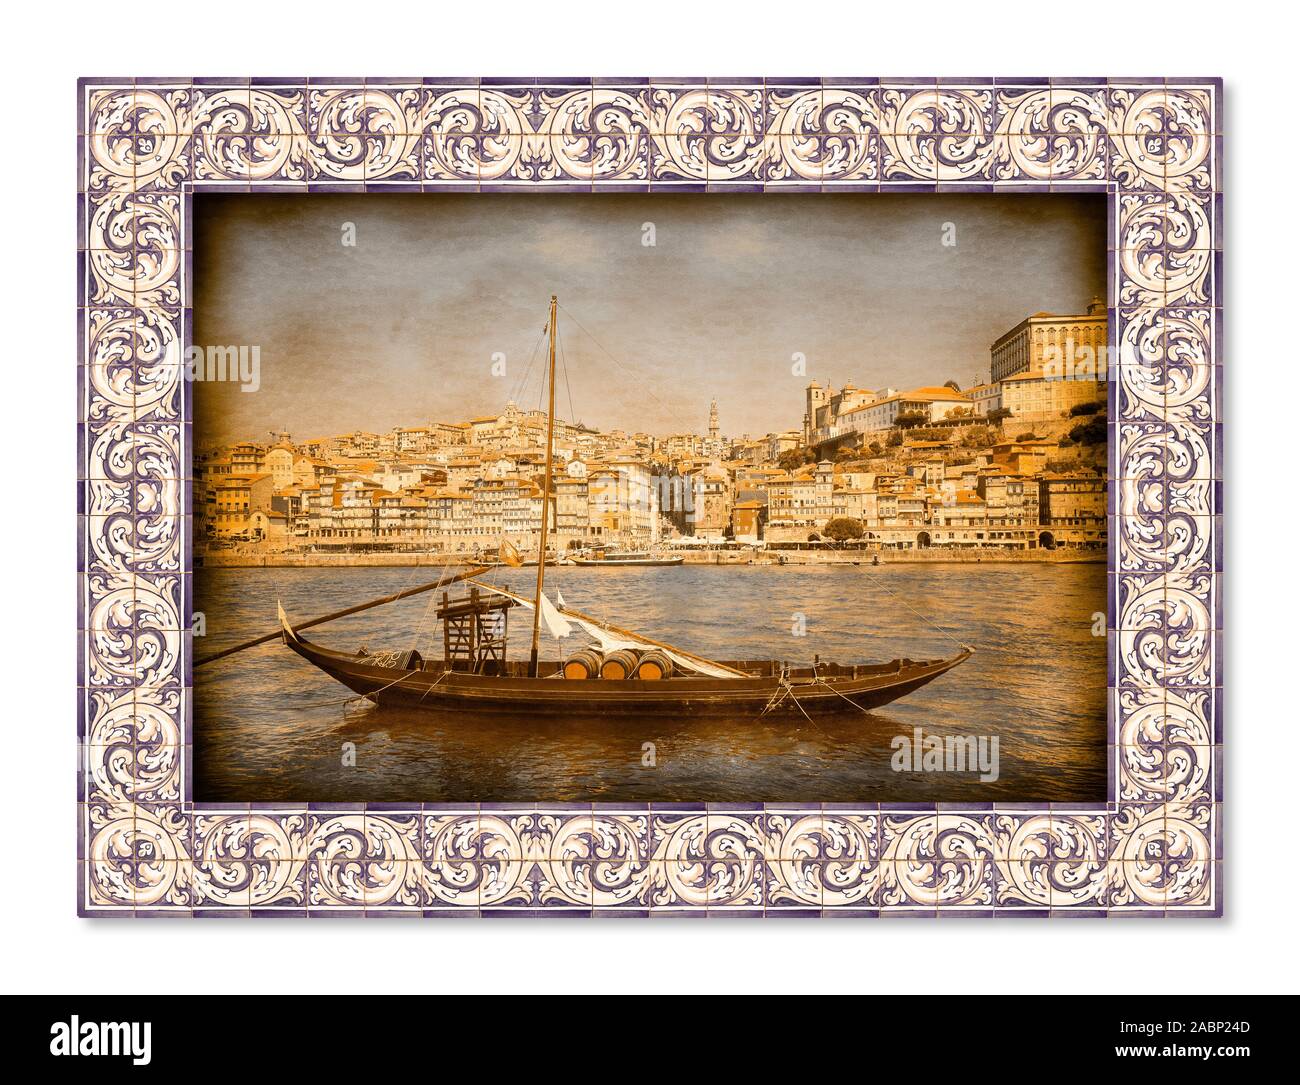 Bateaux portugais typique, utilisé dans le passé pour transporter le célèbre vin de Porto, avec des azulejos frame Banque D'Images